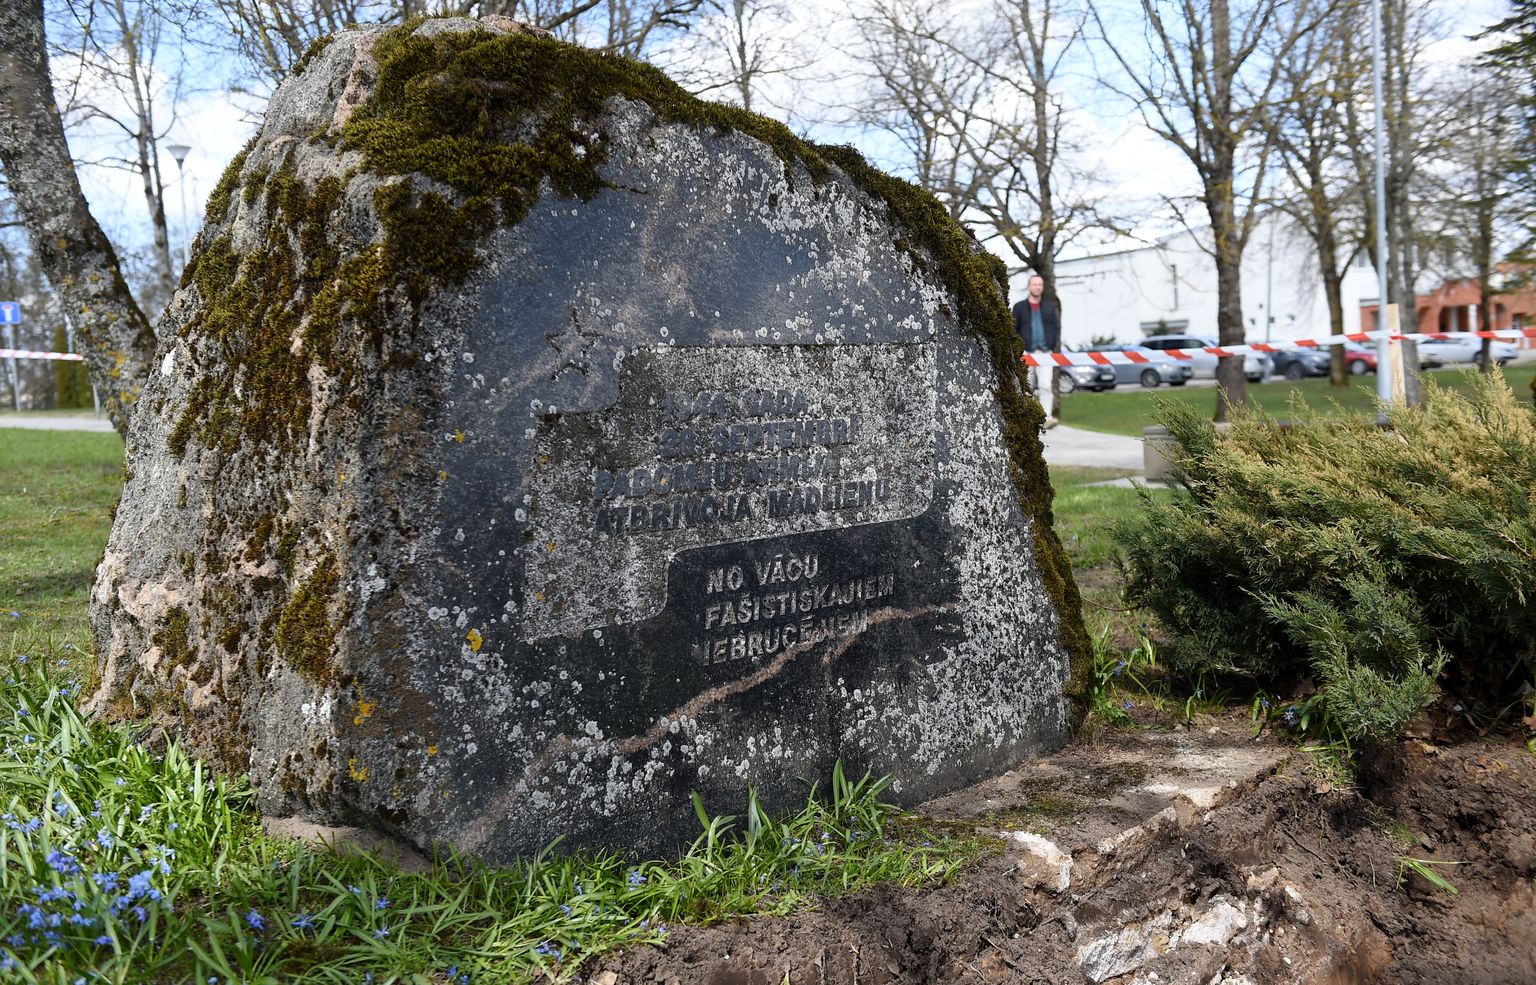 Padomju okupācijas piemineklis ar iecirstu uzrakstu "1944. gada 26.s eptembrī padomju armija atbrīvoja Madlienu no vācu fašistiskajiem iebrucējiem", kuru demontēs uz izmantos kā pamatu ceļa stiprinājumam.